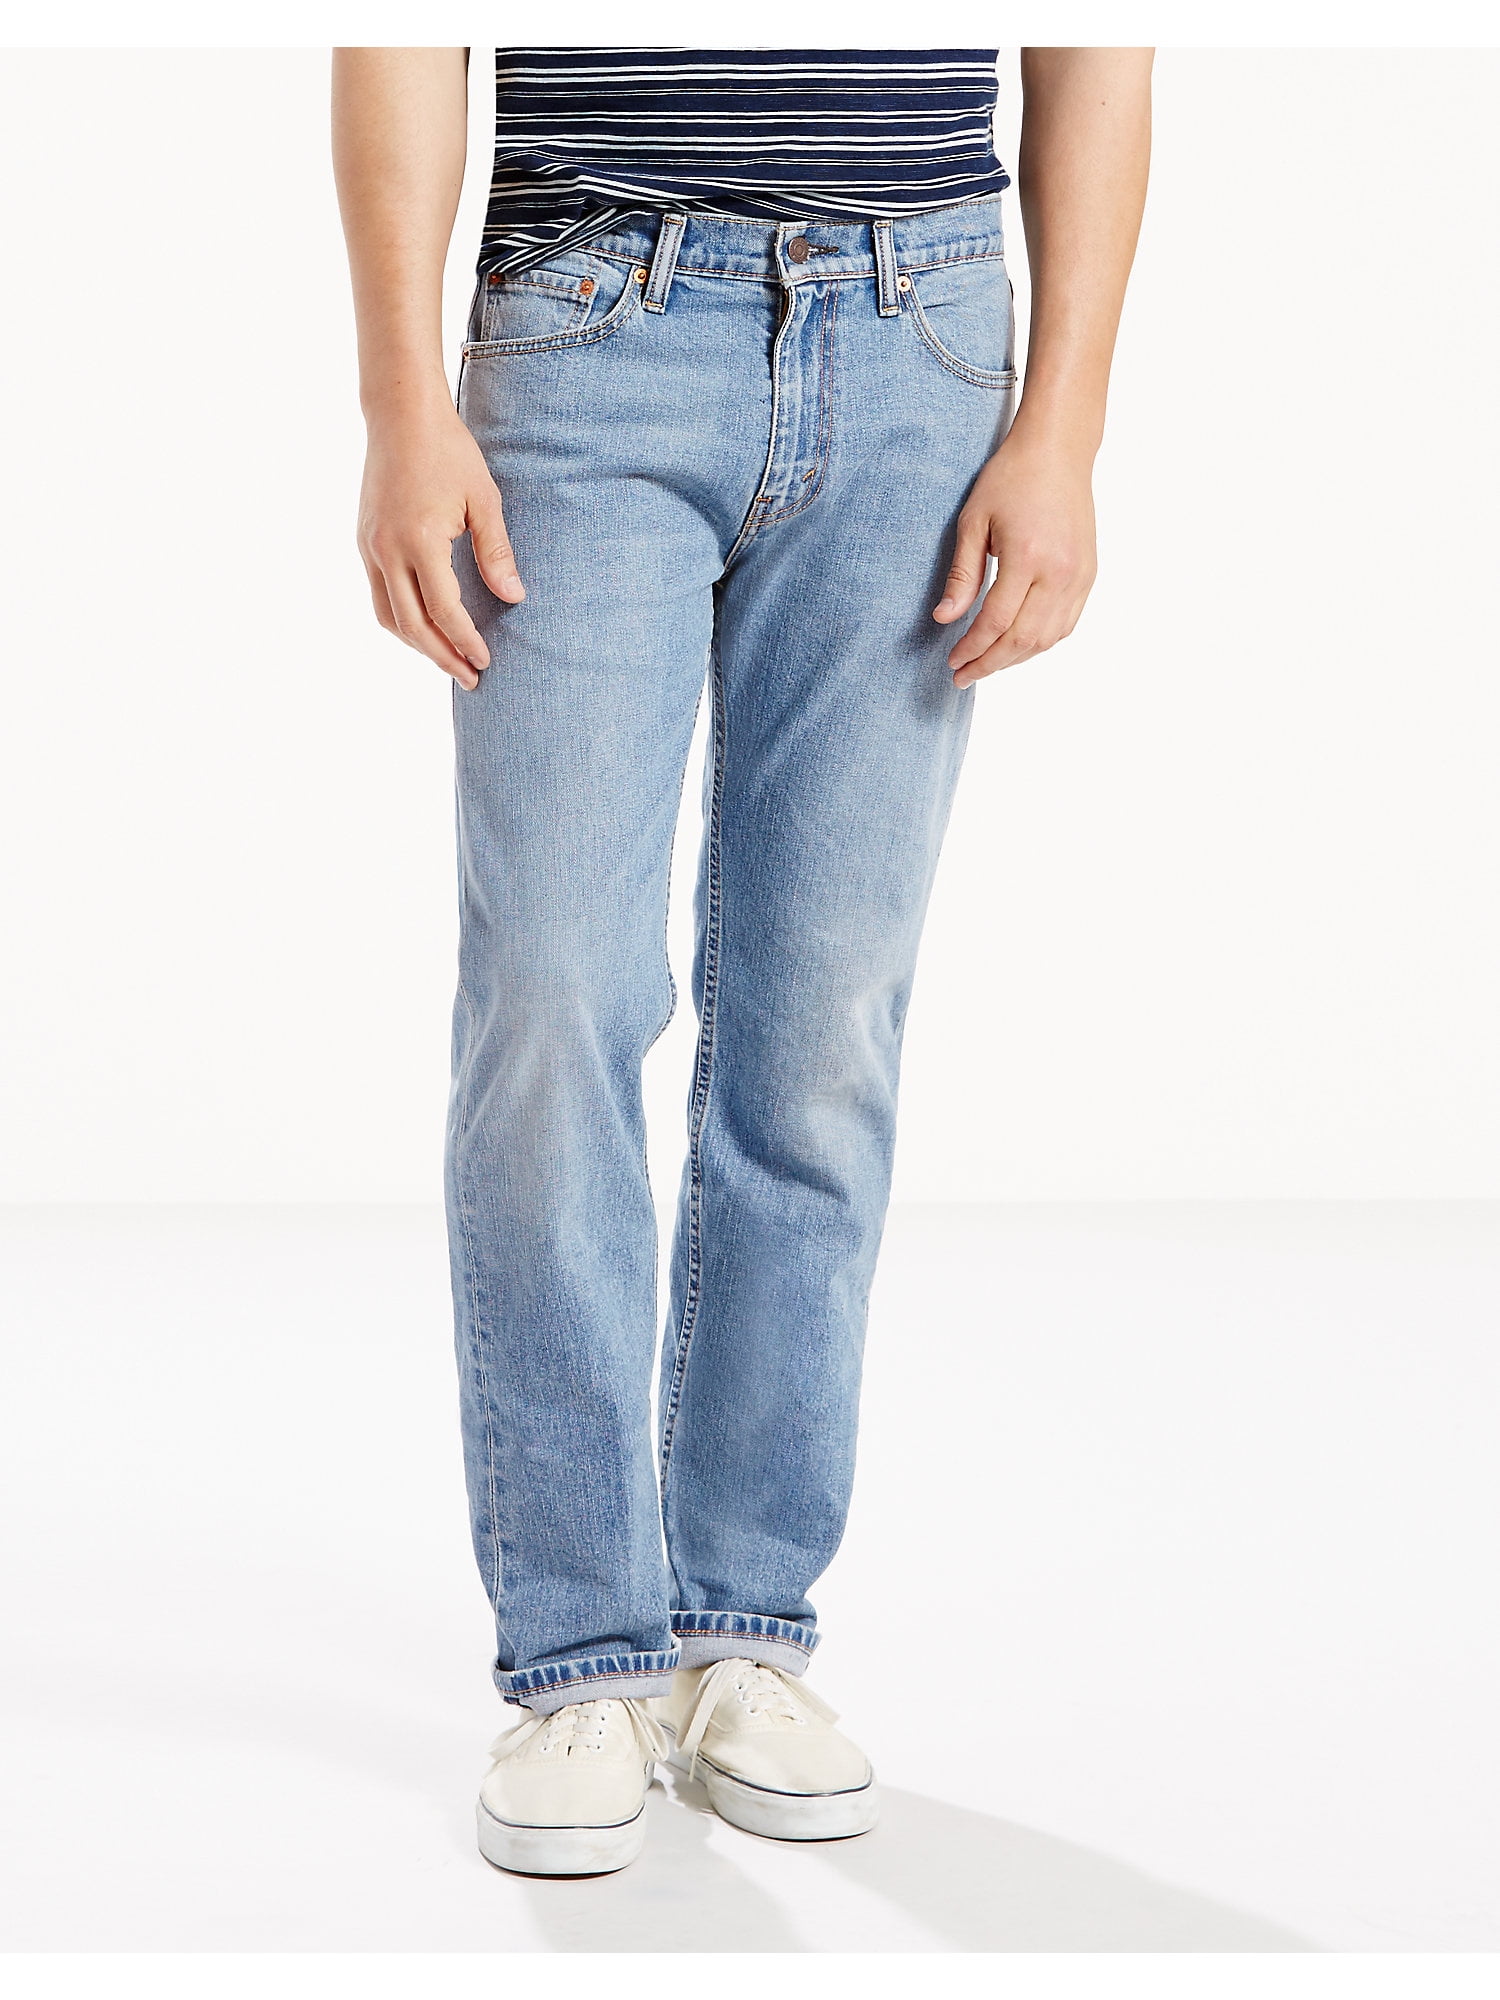 Levi's - Levi's Men's 505 Regular Fit Jeans - Walmart.com - Walmart.com